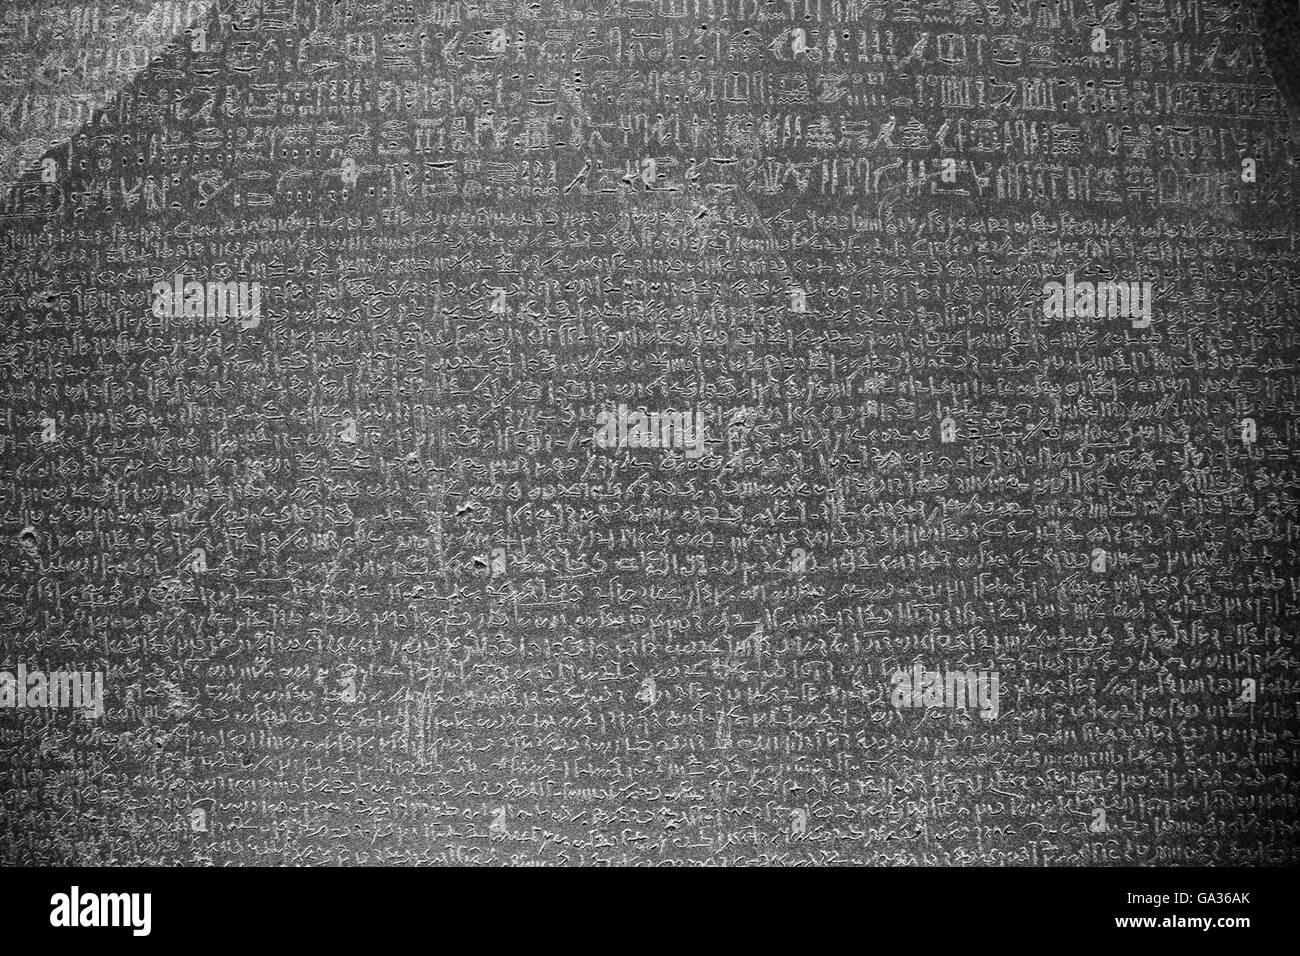 Rosetta Stone, 196 BC, British Museum, Londres, Reino Unido. Foto de stock